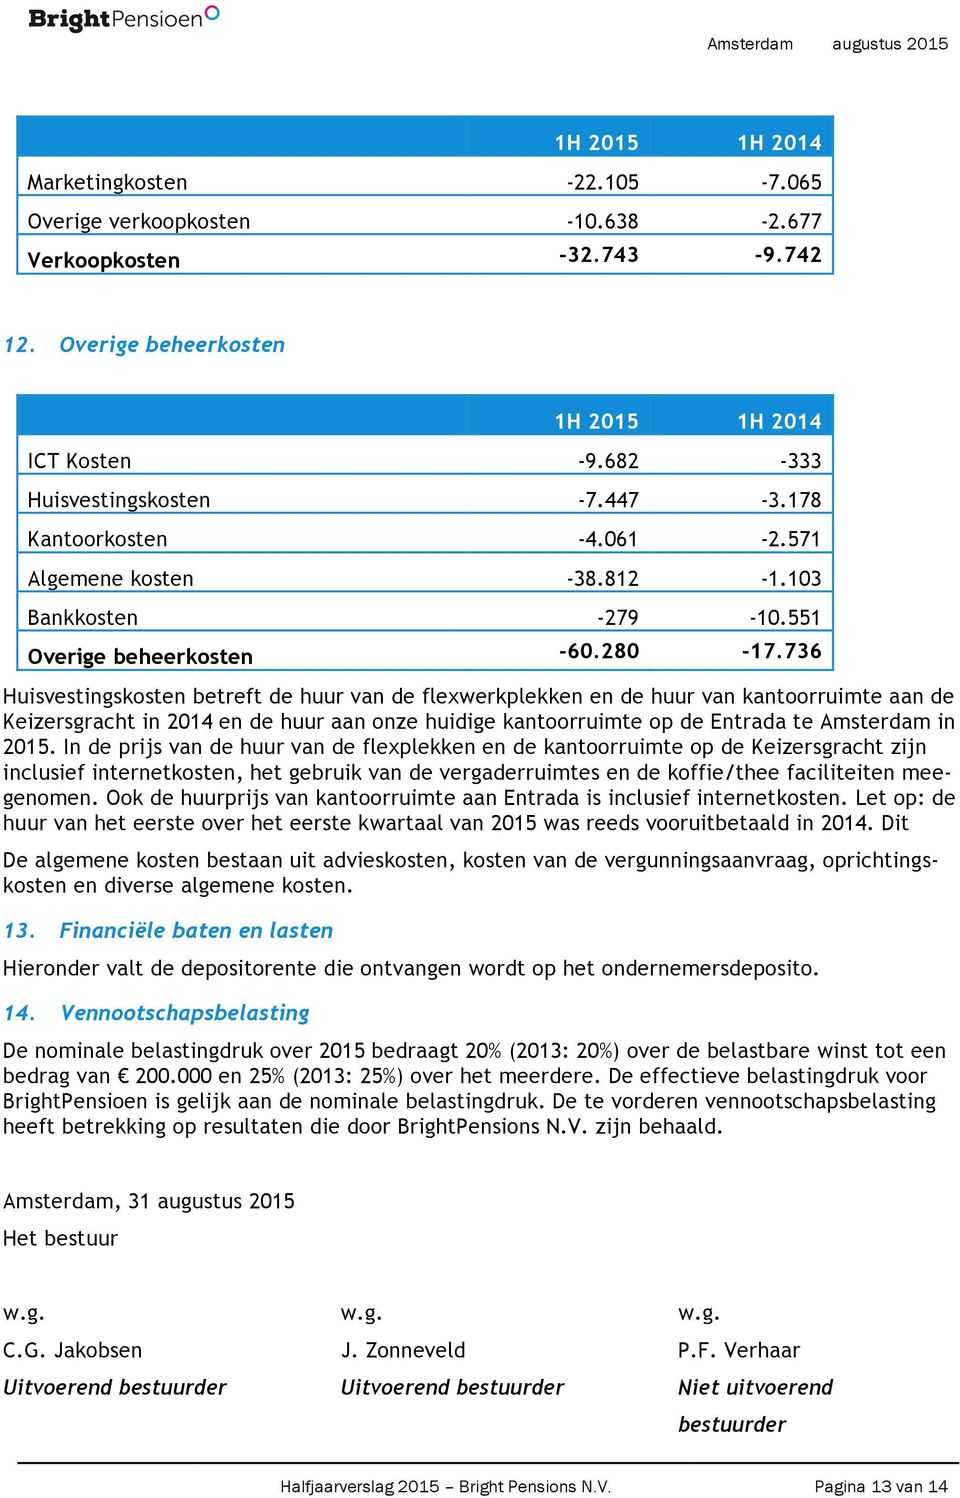 736 Huisvestingskosten betreft de huur van de flexwerkplekken en de huur van kantoorruimte aan de Keizersgracht in 2014 en de huur aan onze huidige kantoorruimte op de Entrada te Amsterdam in 2015.